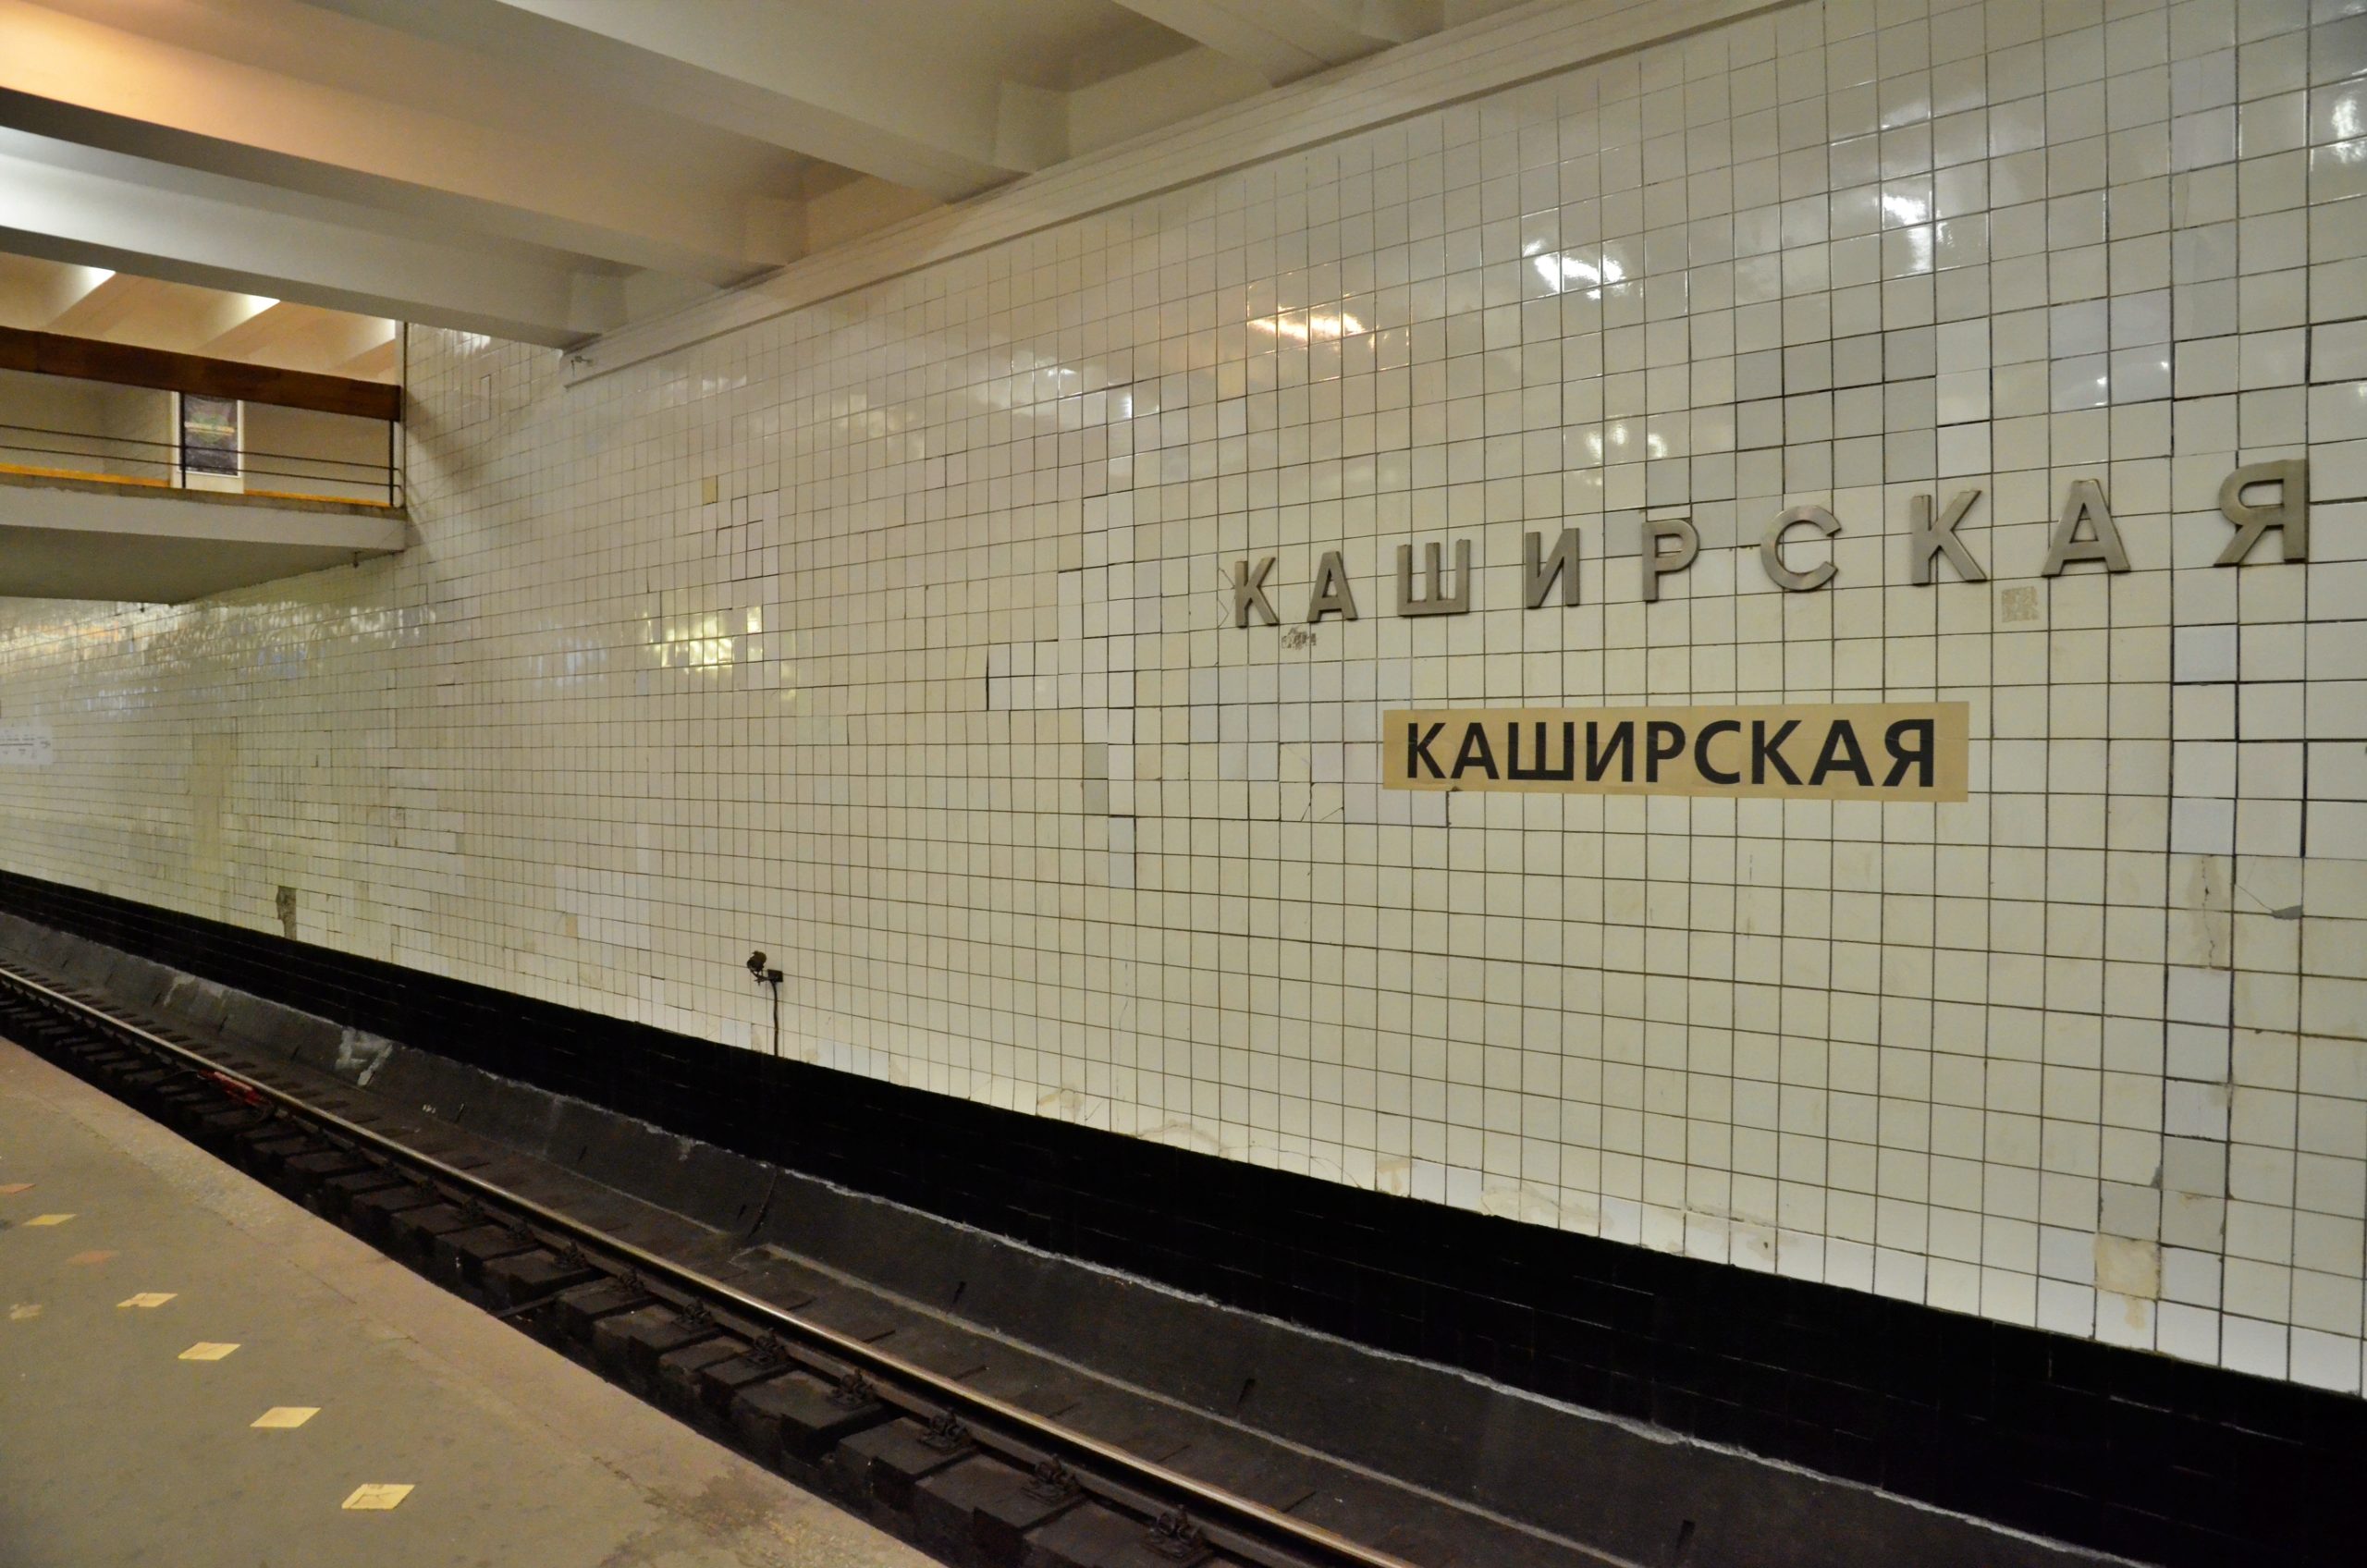 Новую вывеску с названием станции установили на «Каширской»